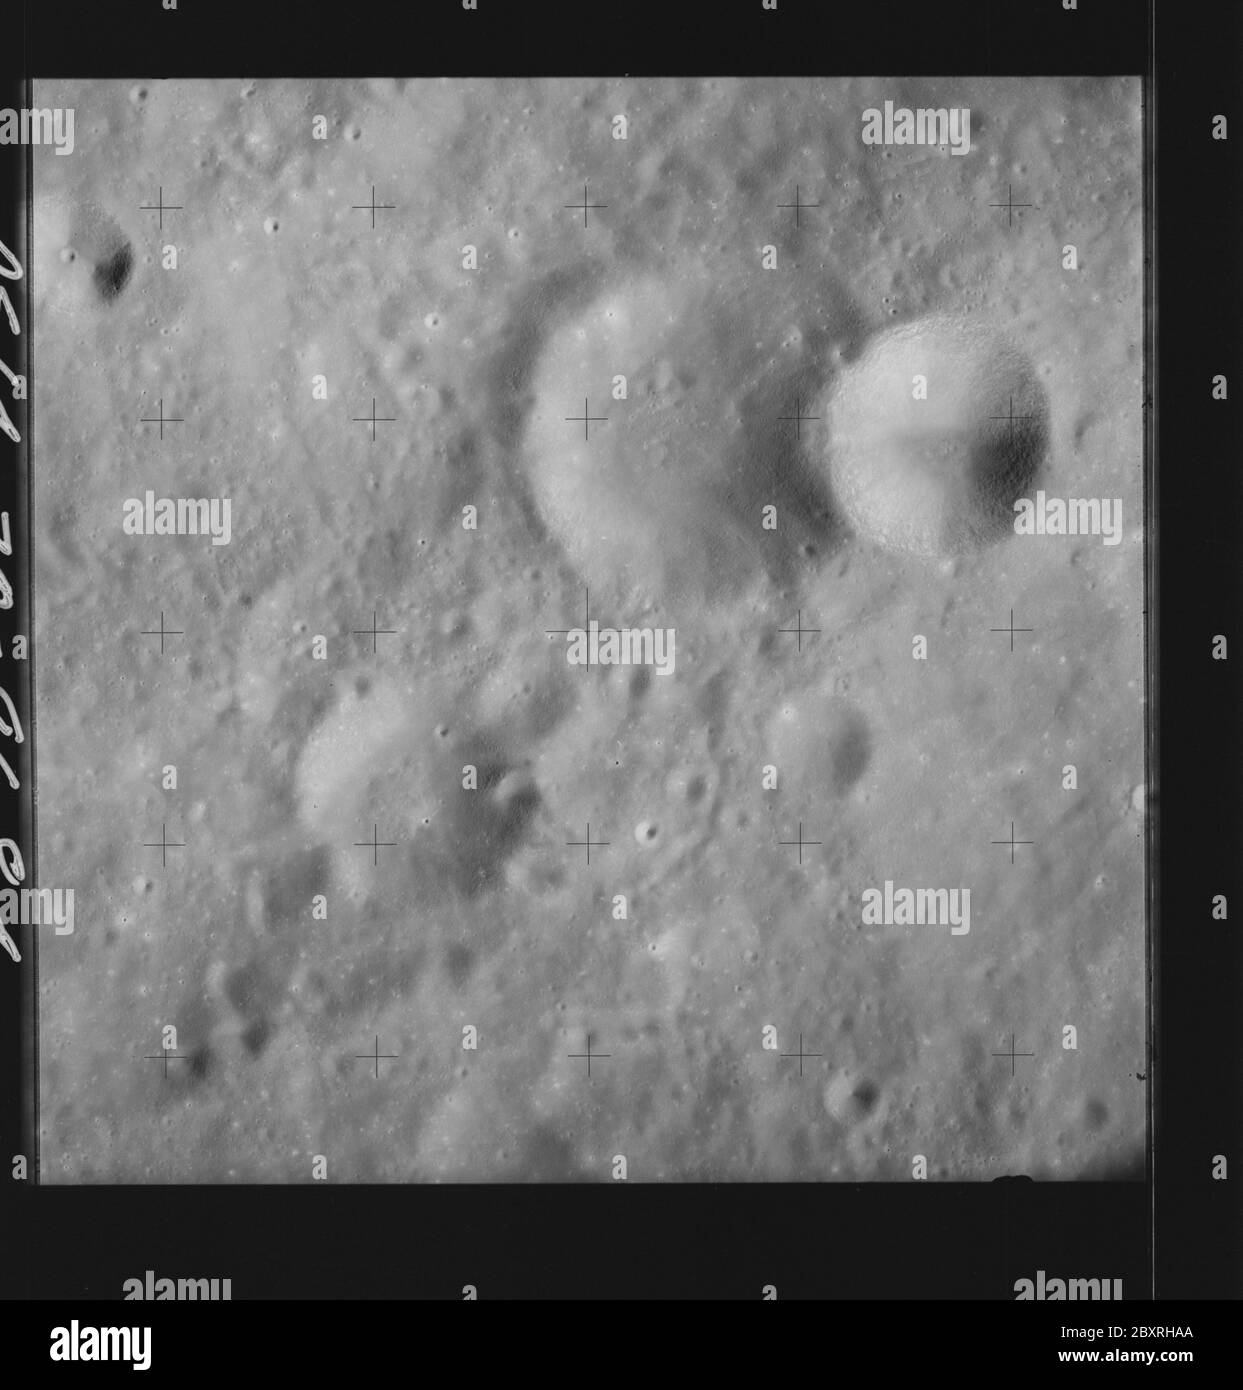 AS14-70-9684 - Apollo 14 - immagine della missione Apollo 14 - Vista della superficie lunare a sud-est del cratere di Einthoven.; scopo e contenuto: Il database originale descrive questo come: Descrizione: Vista della superficie lunare a sud-est del cratere di Einthoven. Sono state scattate immagini sulla Rivoluzione 26 della missione Apollo 14. Il caricatore di pellicola originale era etichettato Q, il tipo di pellicola era 3400BW (Panatomic-X, Nero e Bianco), lente da 80 mm con un'elevazione del sole di 28 gradi. La scala approssimativa della foto è 1:1,380,000. Il punto principale della latitudine era 7.5S da Longitude 111.5E, con un'inclinazione verticale della telecamera. Oggetto: Apollo 14 Fligh Foto Stock